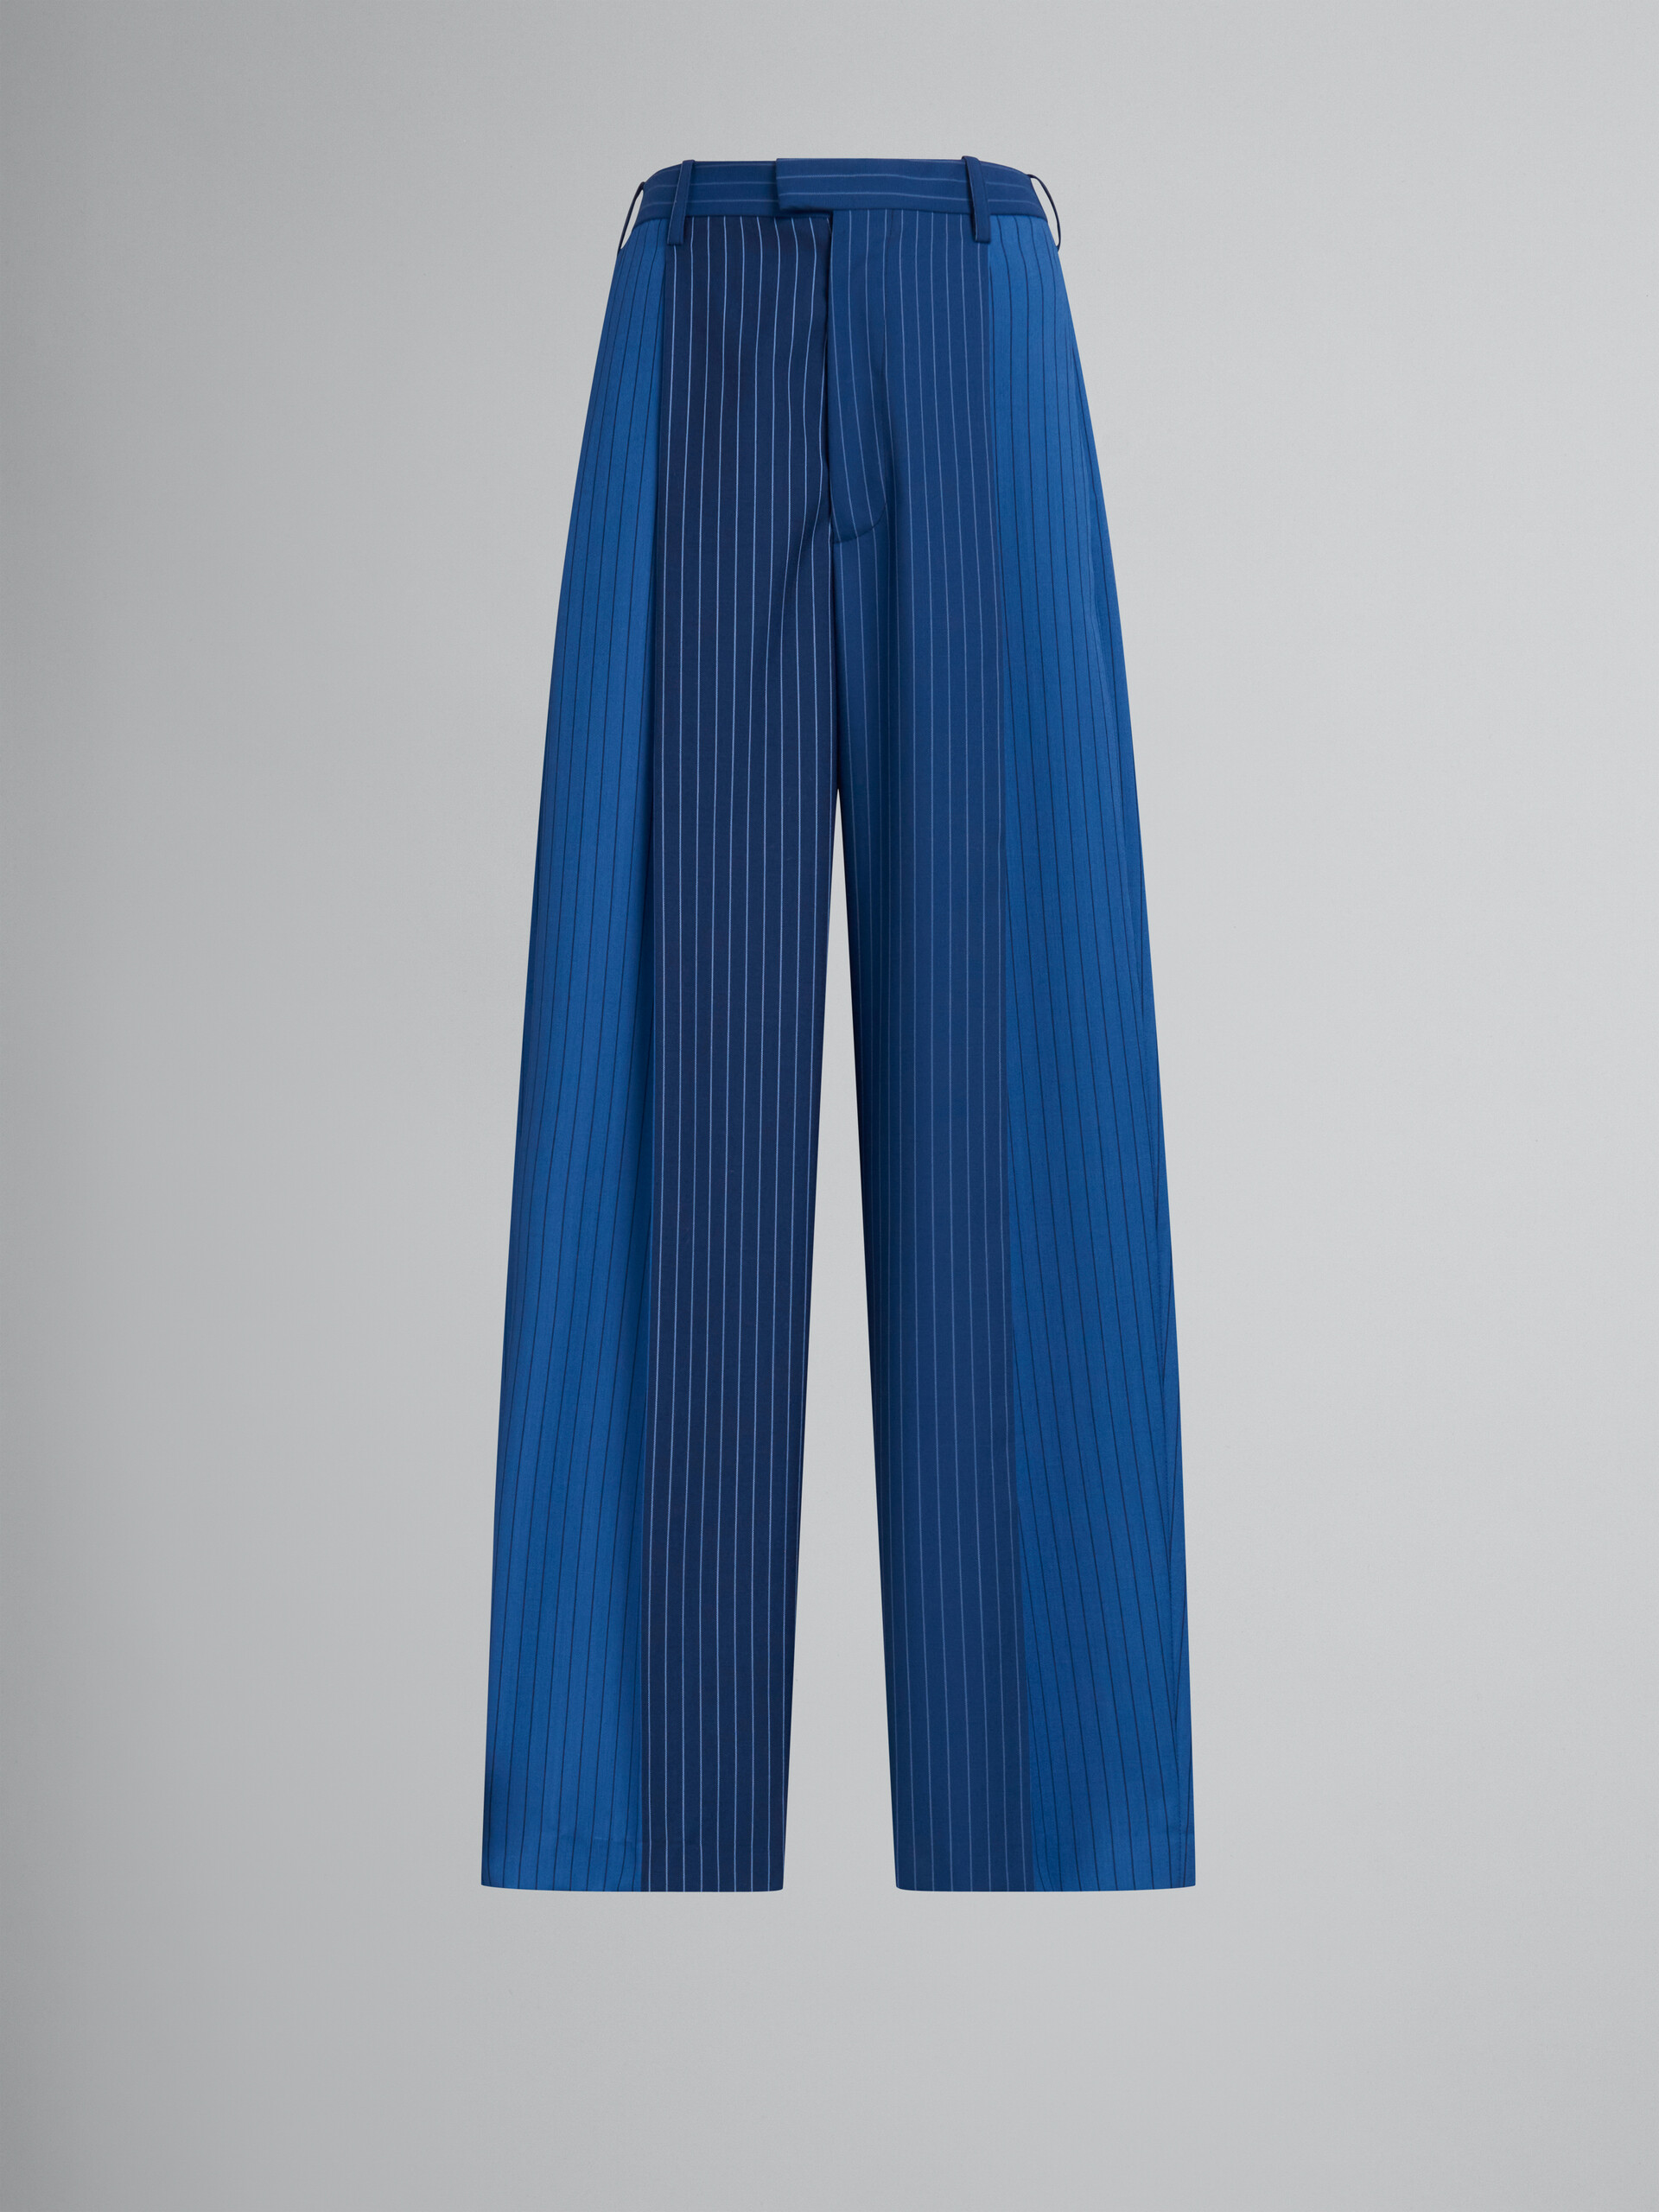 Pantalón de lana azul degradado con raya diplomática - Pantalones - Image 1